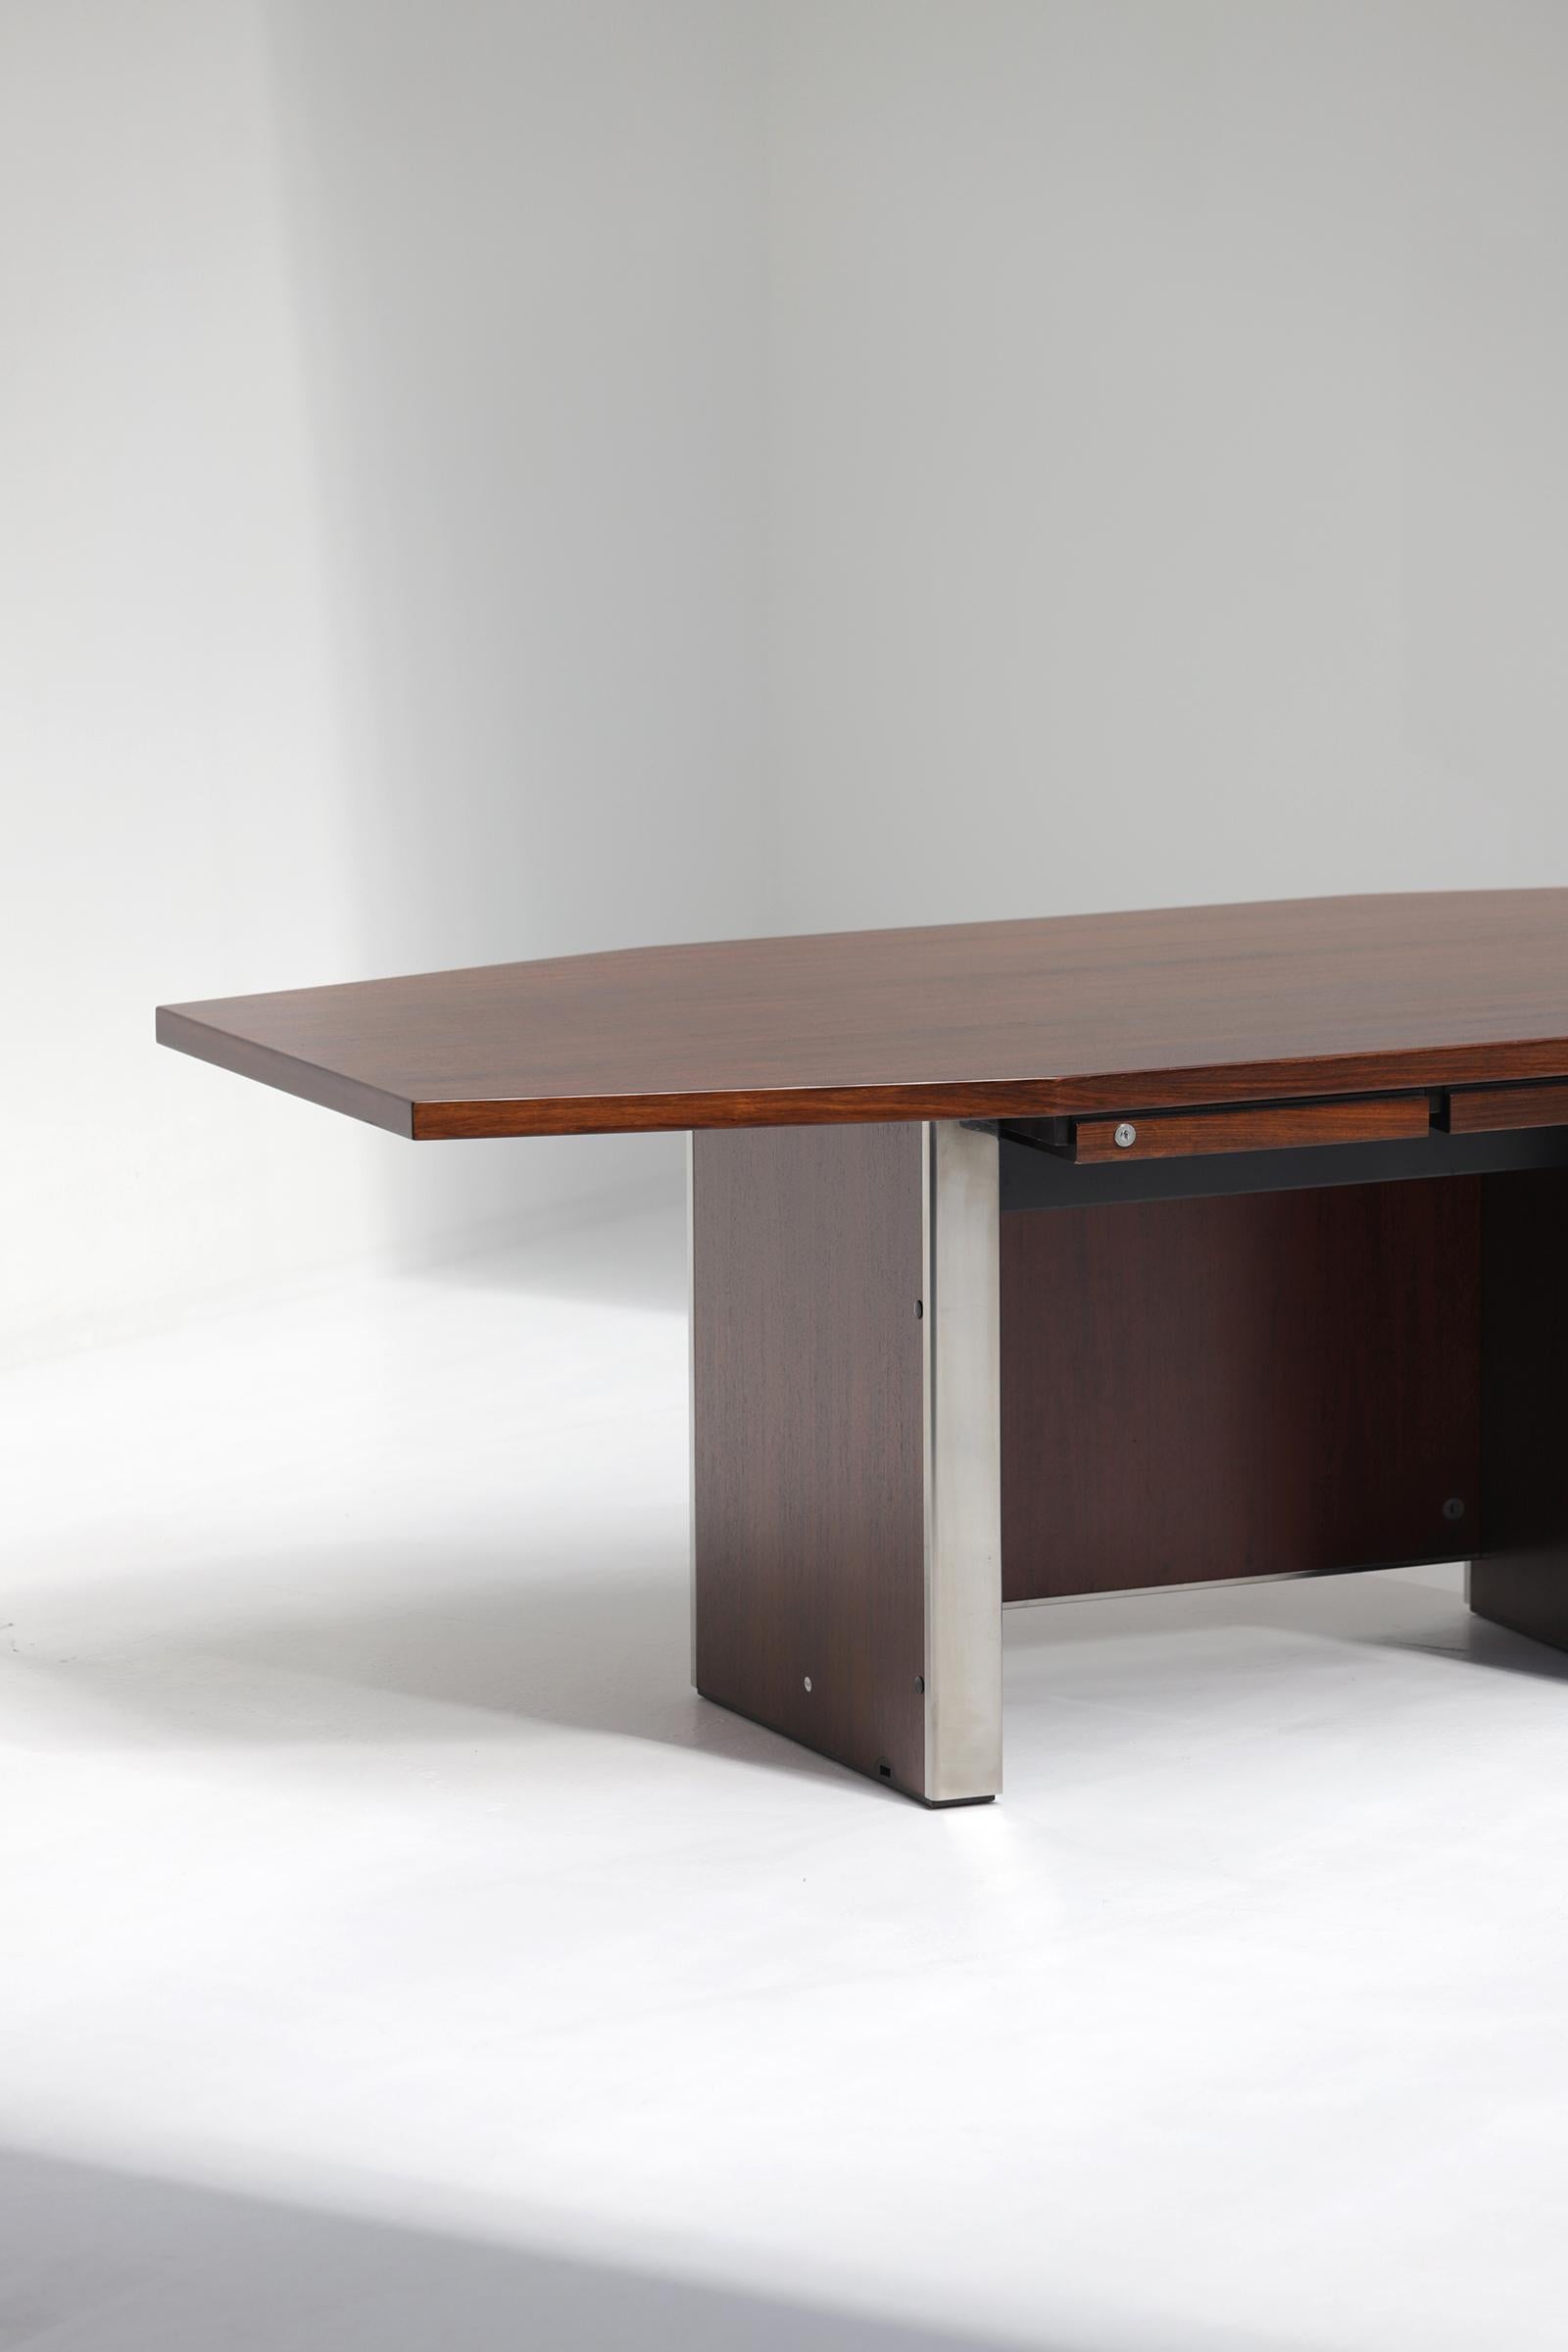 Italian Mid-Century Modern Desk by Desk Ennio Fazioli & Ufficio Tecnico for Mim, Italy  For Sale